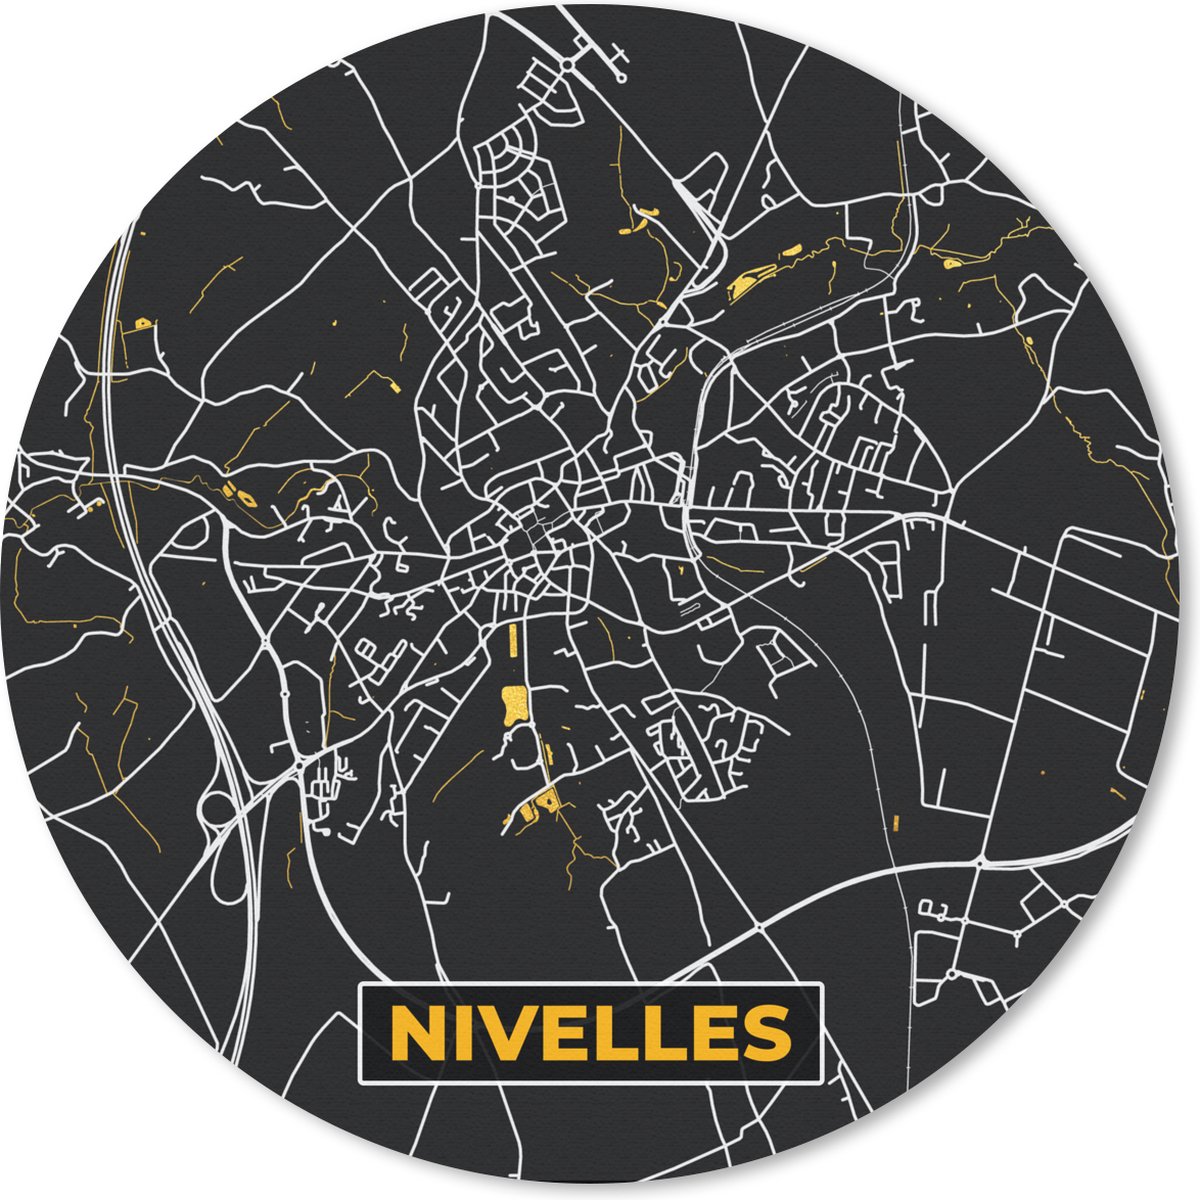 Muismat - Mousepad - Rond - Nivelles - Plattegrond - Kaart - Goud - Stadskaart - 50x50 cm - Ronde muismat